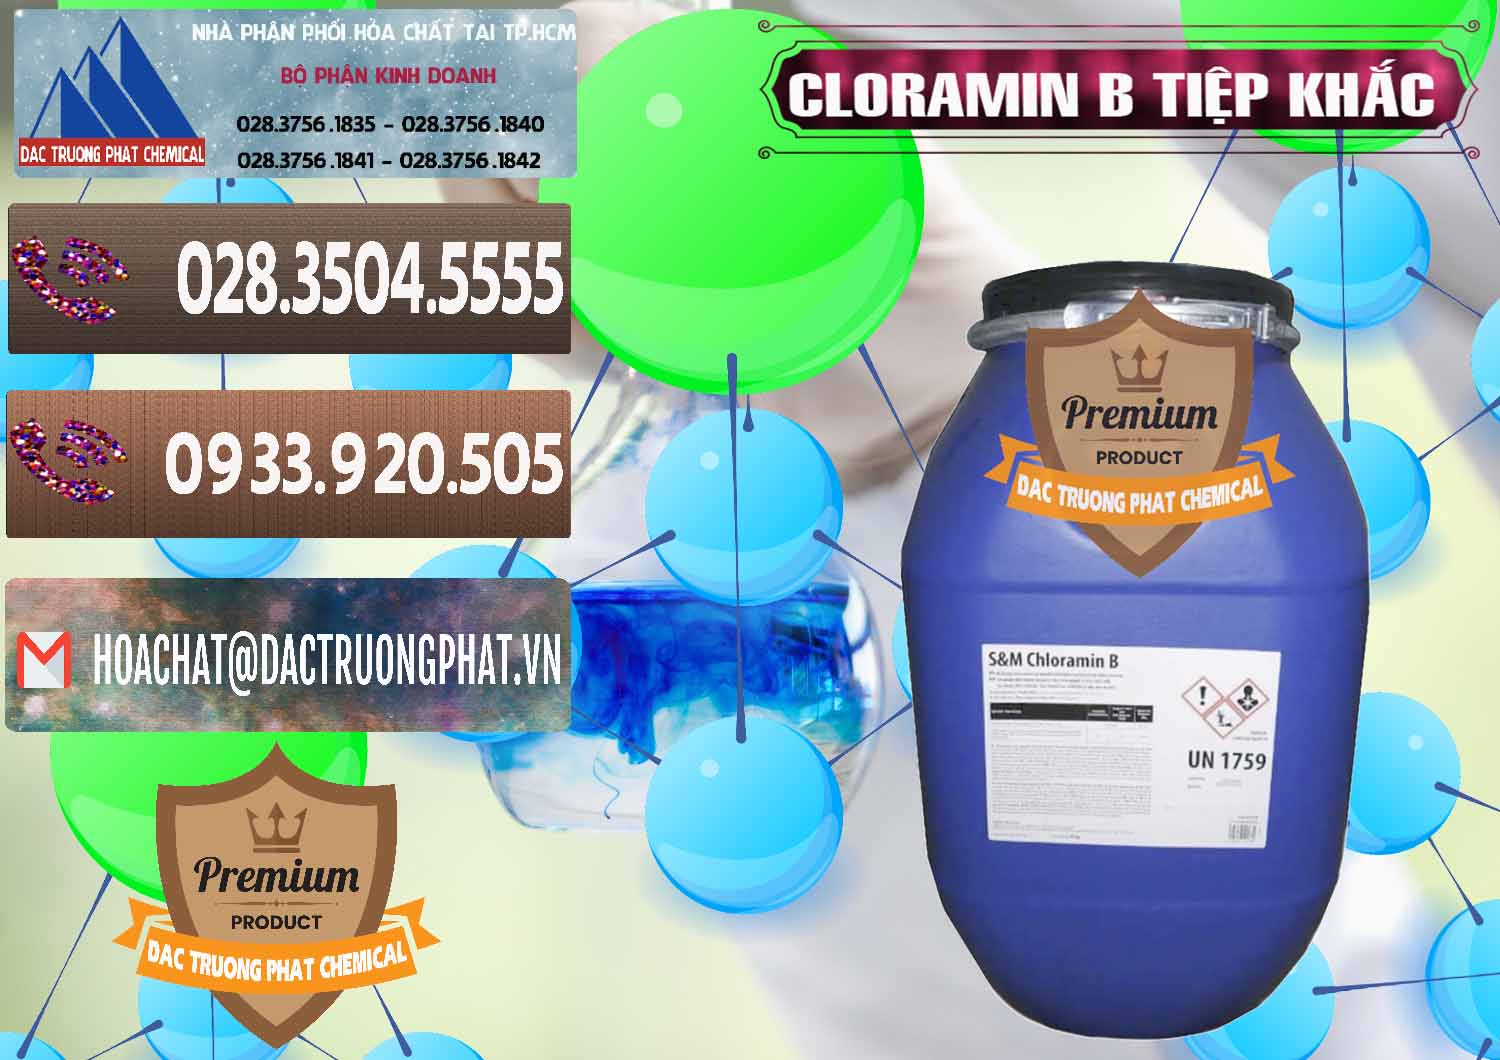 Chuyên cung cấp và bán Cloramin B Cộng Hòa Séc Tiệp Khắc Czech Republic - 0299 - Cung cấp - phân phối hóa chất tại TP.HCM - hoachatviet.net